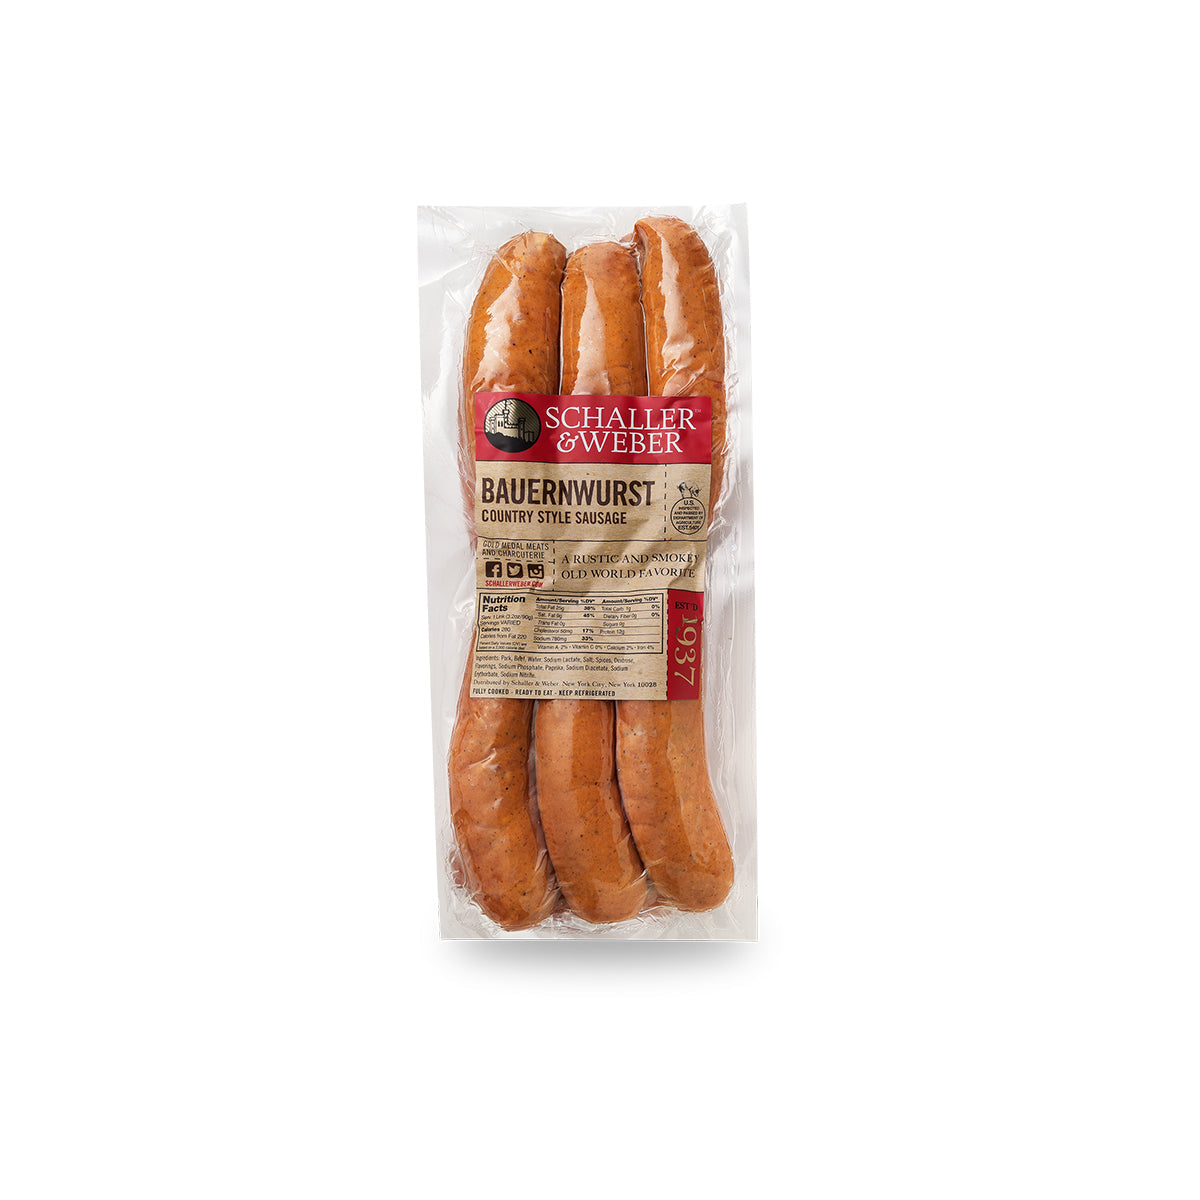 Schaller & Weber Pork & Beef Bauernwurst Sausages